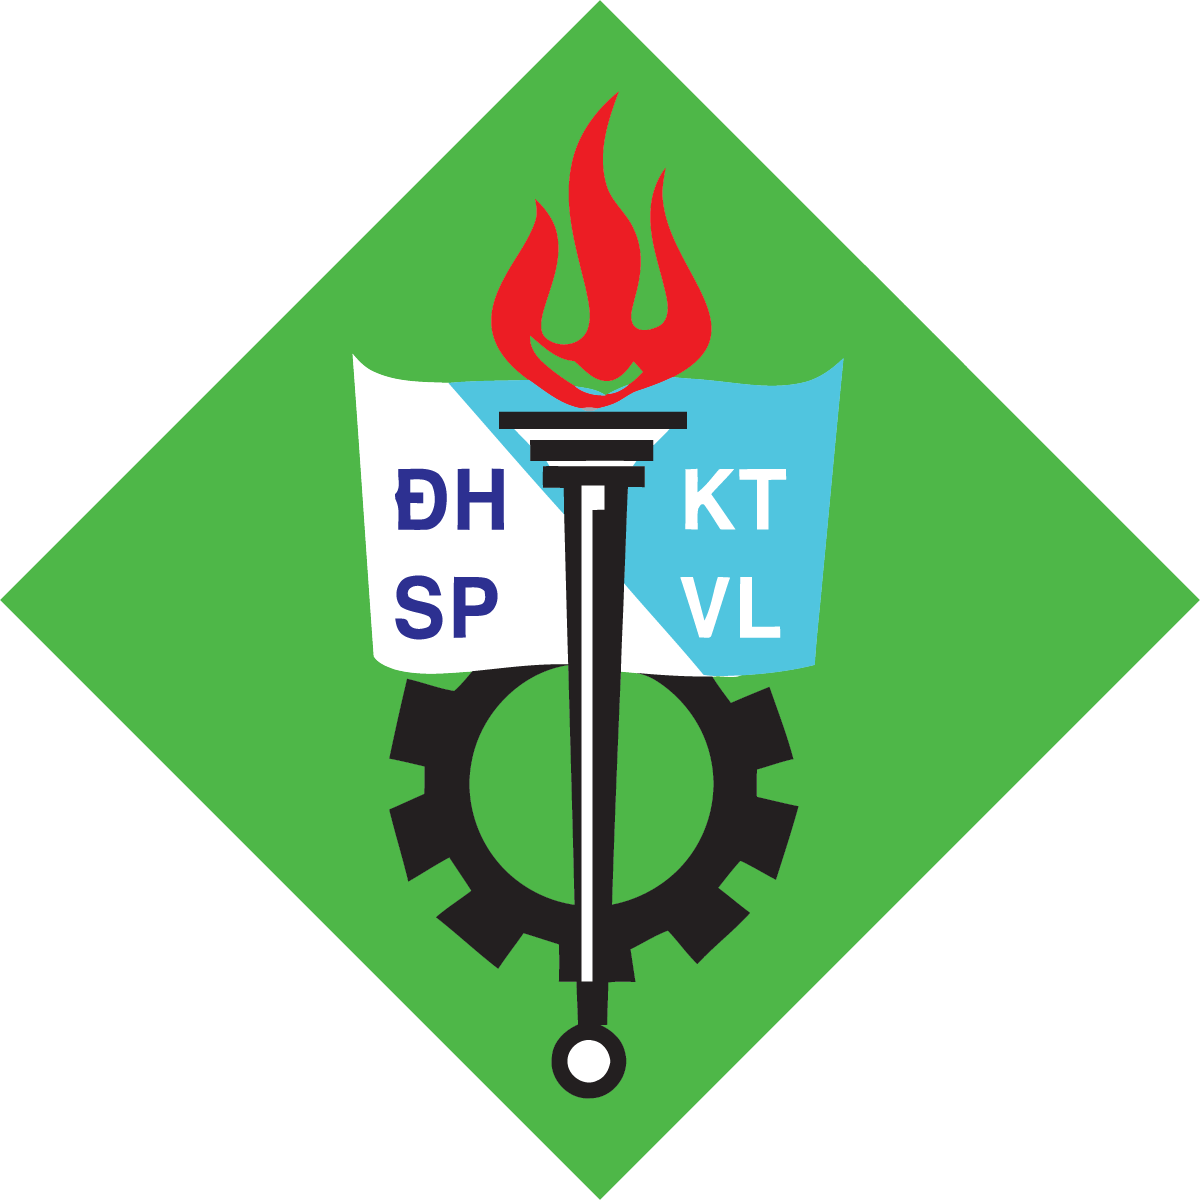 Vector Logo] Trường Đại Học Sư Phạm Kỹ Thuật Vĩnh Long - VLUTE ...